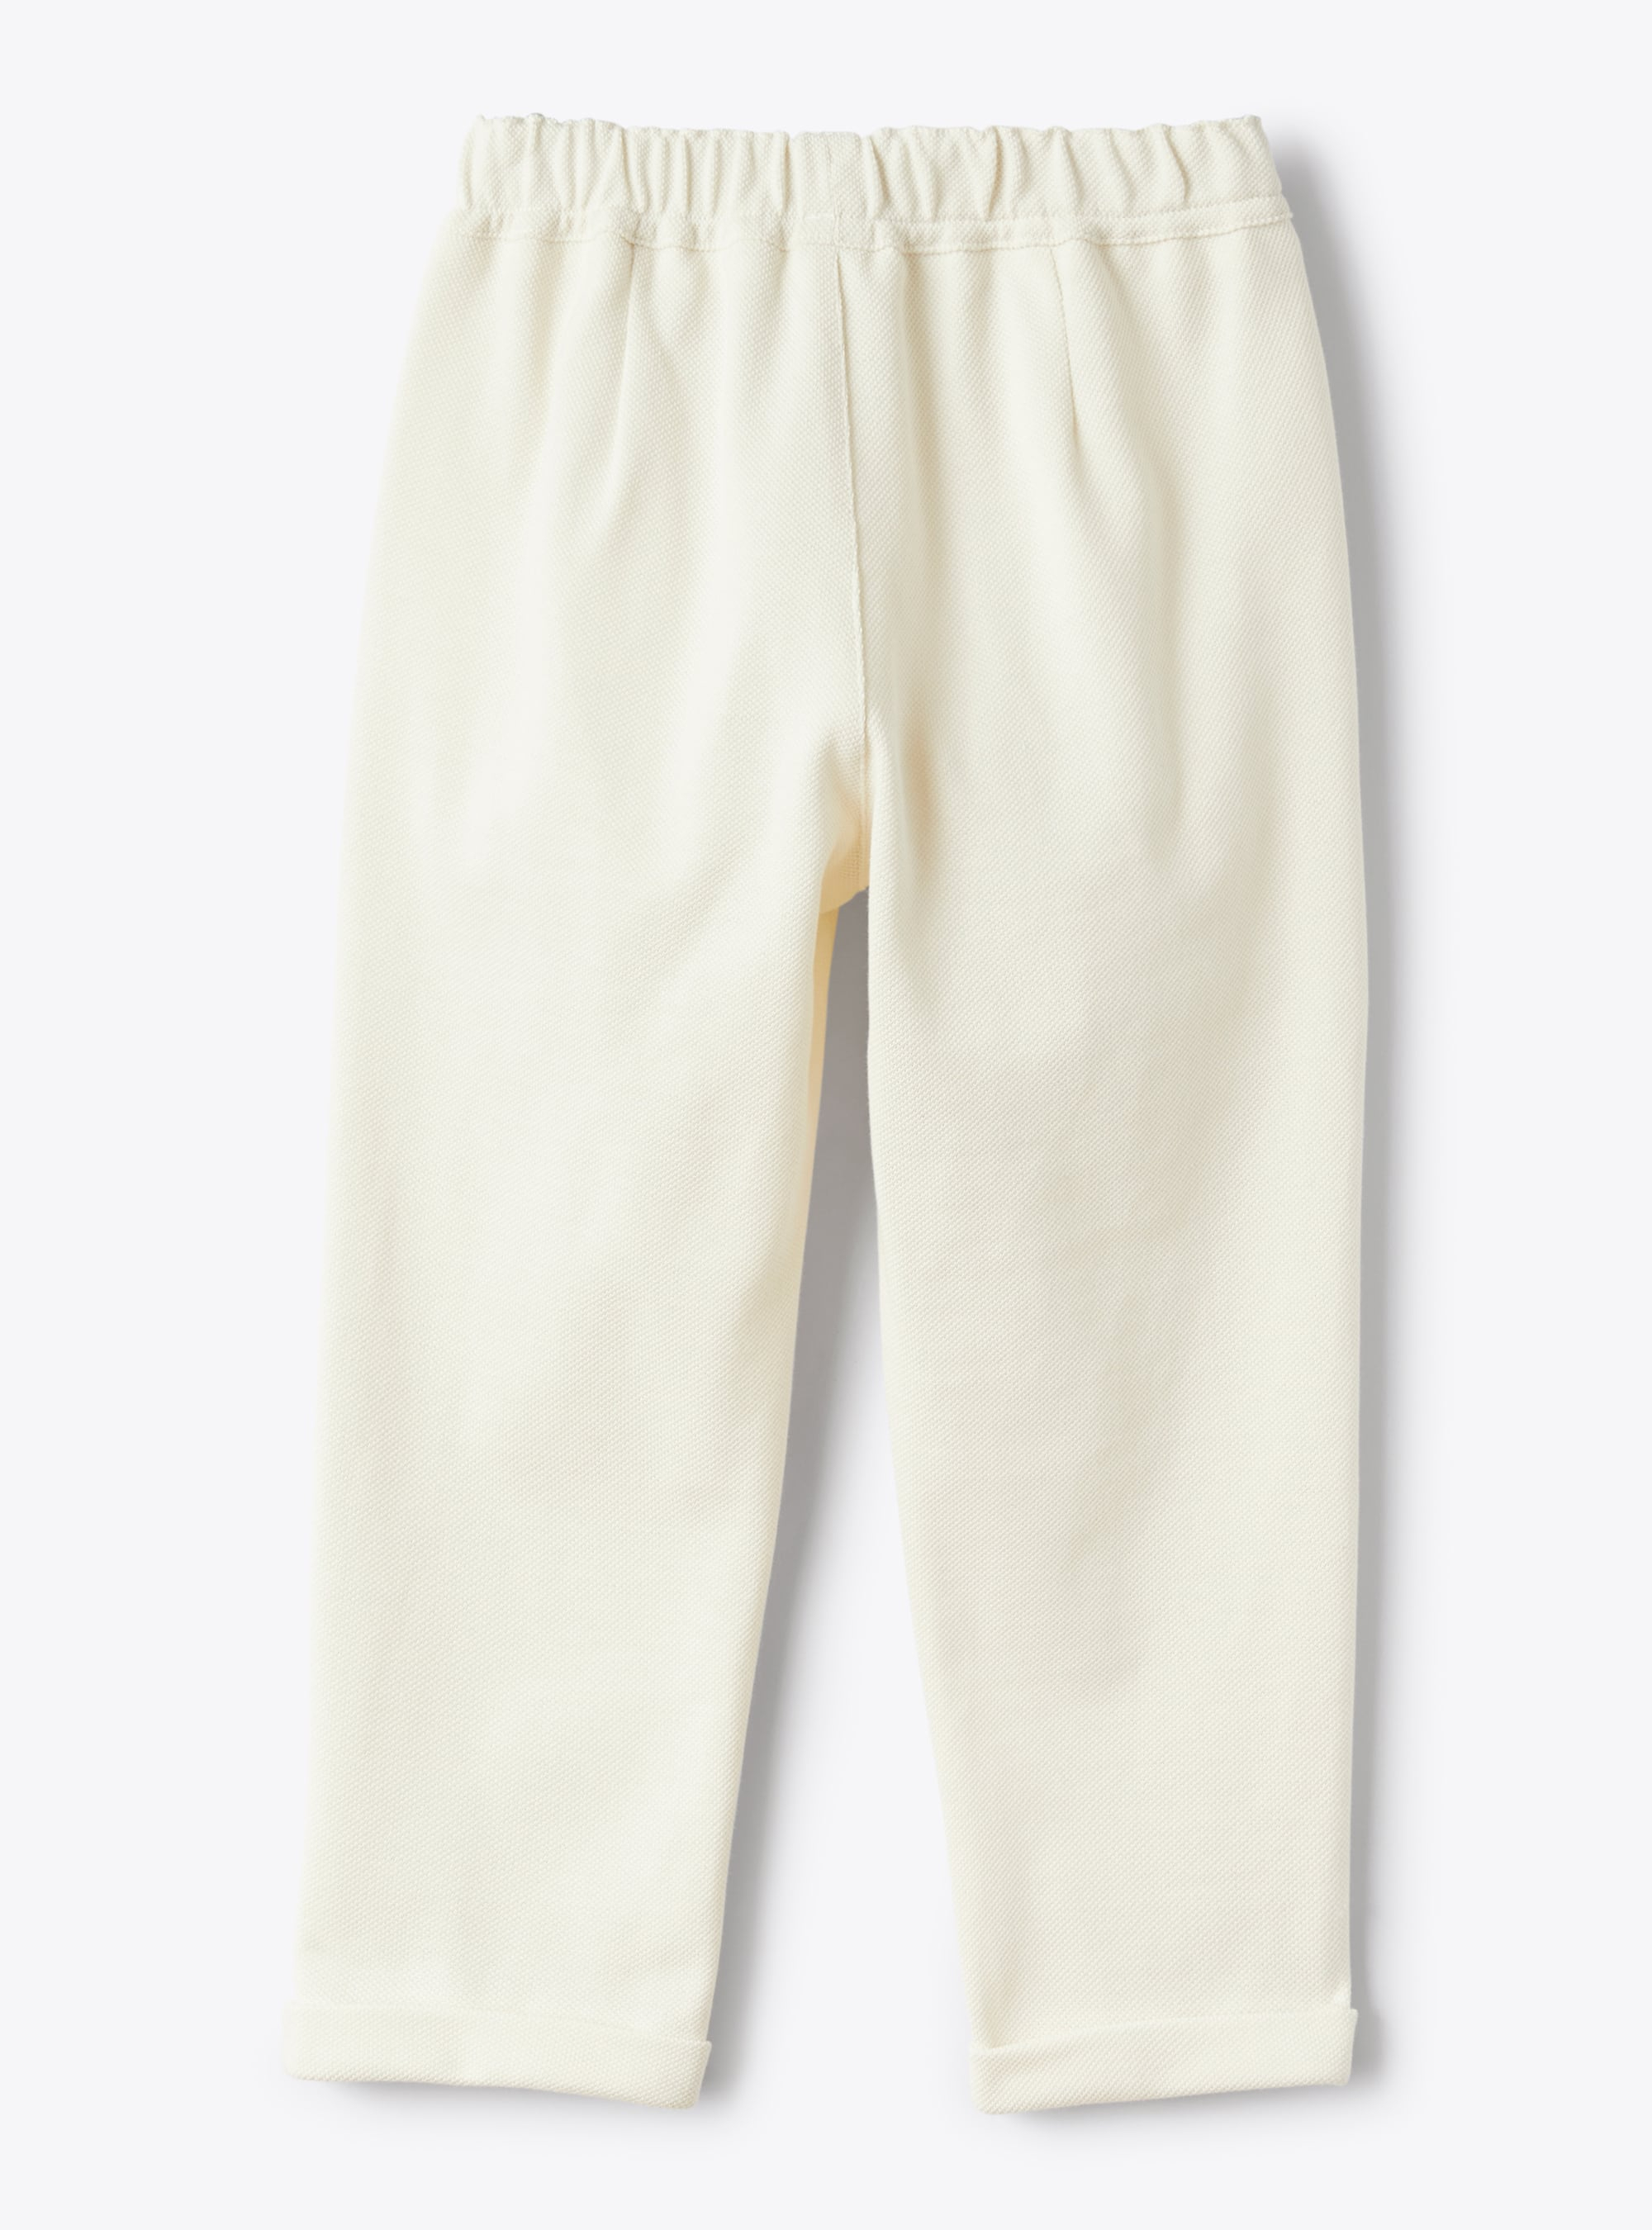 Pantalone lungo in piquet  color conchiglia - Bianco | Il Gufo